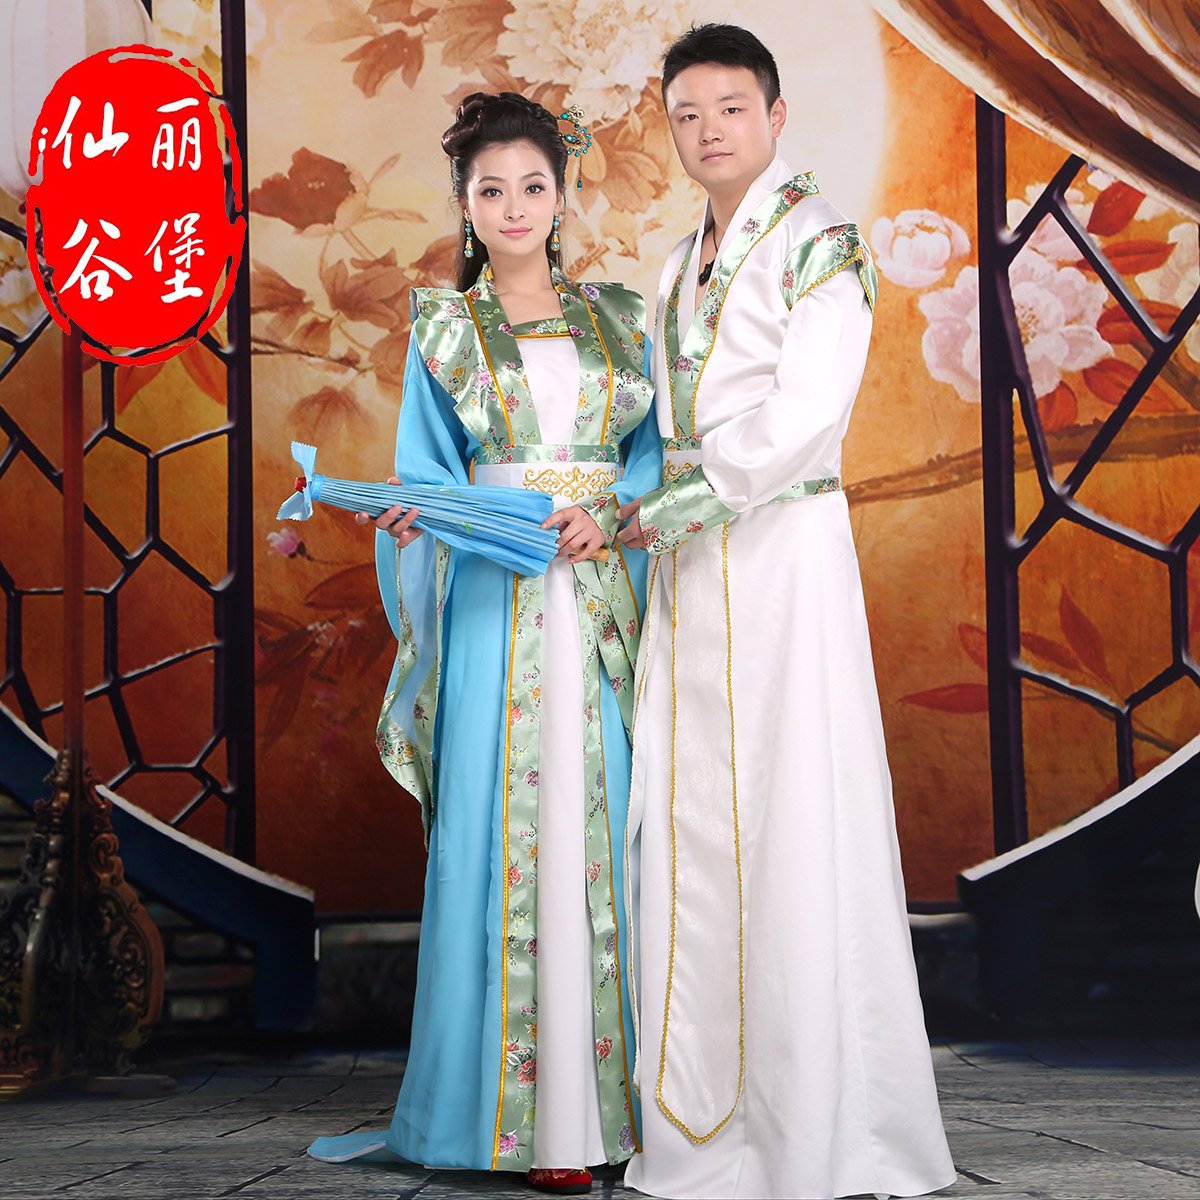 Китайский жених. Китайское свадебное Ханьфу. Китайское свадебное Ханьфу традиционное. Свадебные Ханьфу в Китае. Китай свадьба красное Ханьфу.